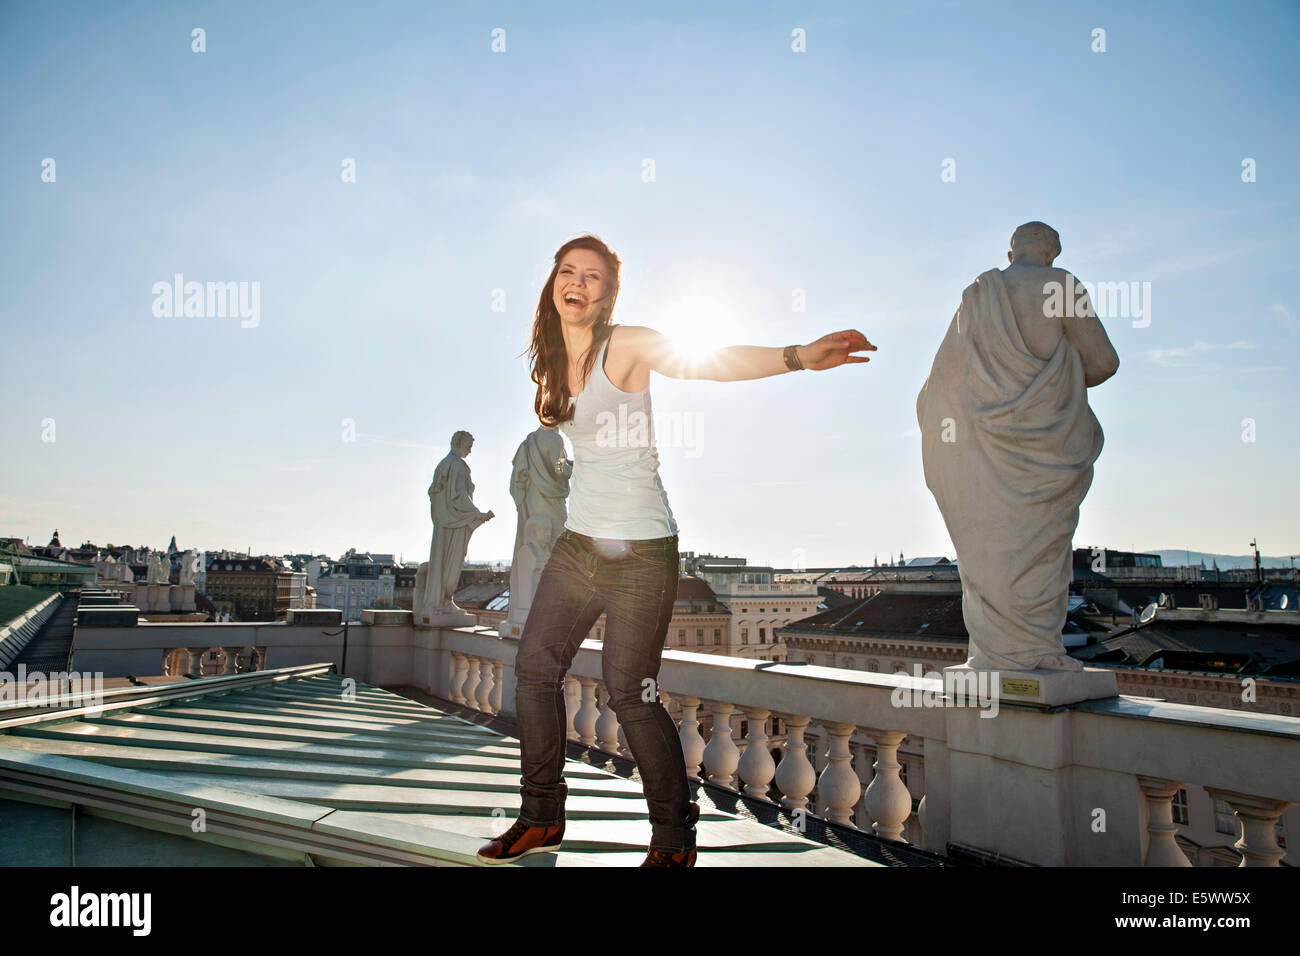 Young adult woman laughing, sur toit, Vienne, Autriche Banque D'Images